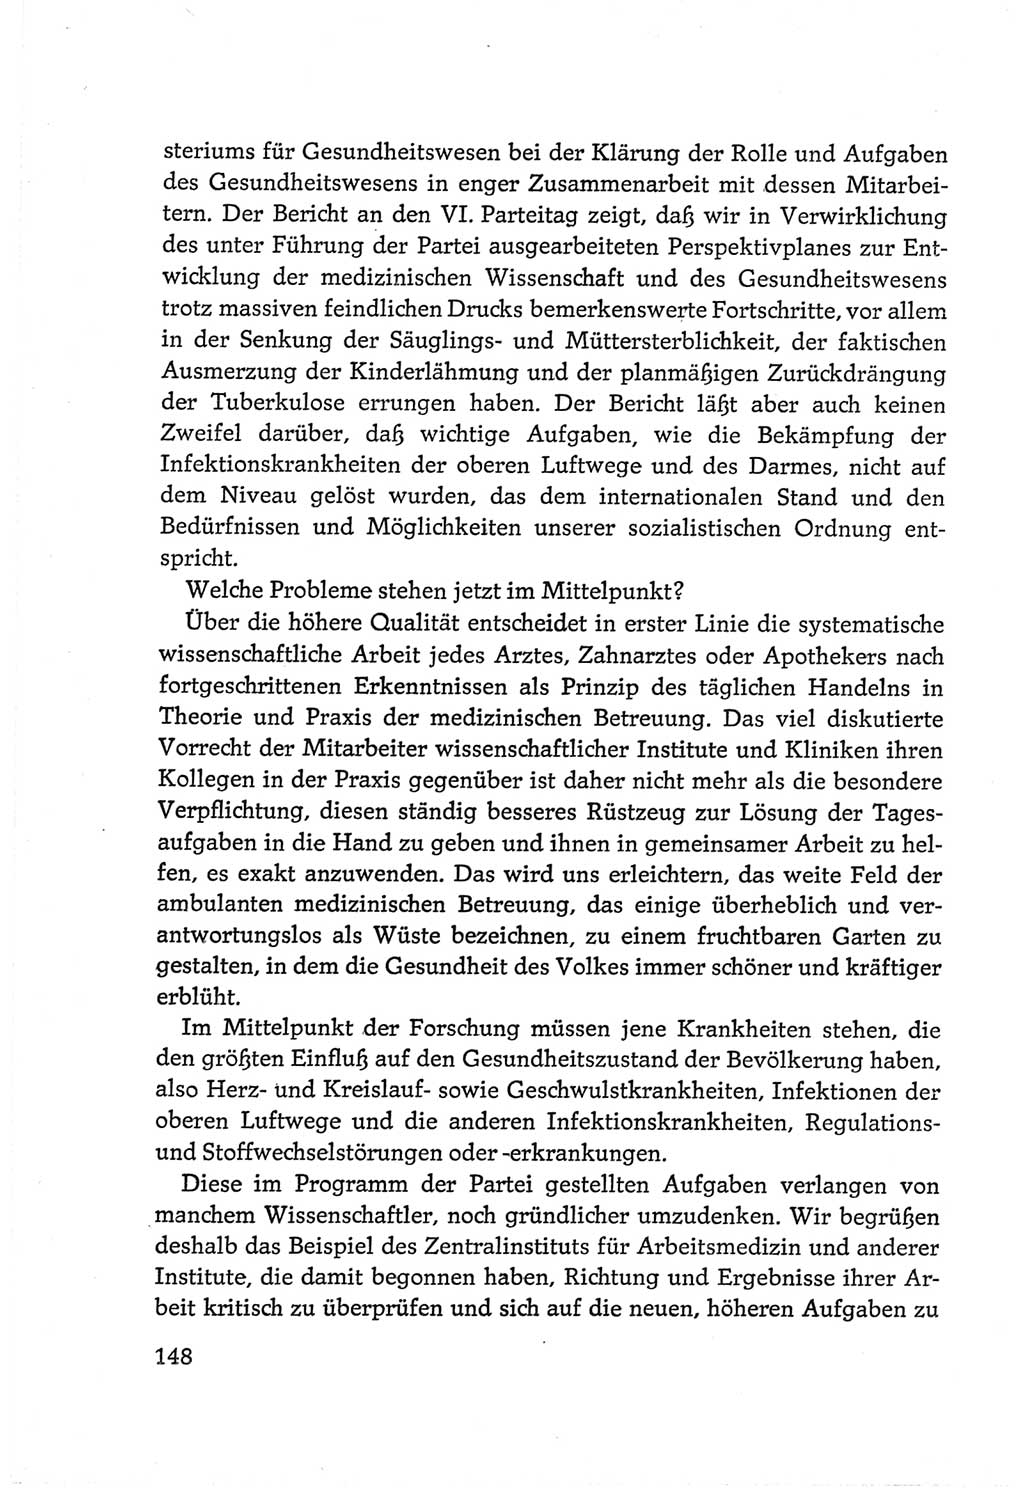 Protokoll der Verhandlungen des Ⅵ. Parteitages der Sozialistischen Einheitspartei Deutschlands (SED) [Deutsche Demokratische Republik (DDR)] 1963, Band Ⅲ, Seite 148 (Prot. Verh. Ⅵ. PT SED DDR 1963, Bd. Ⅲ, S. 148)